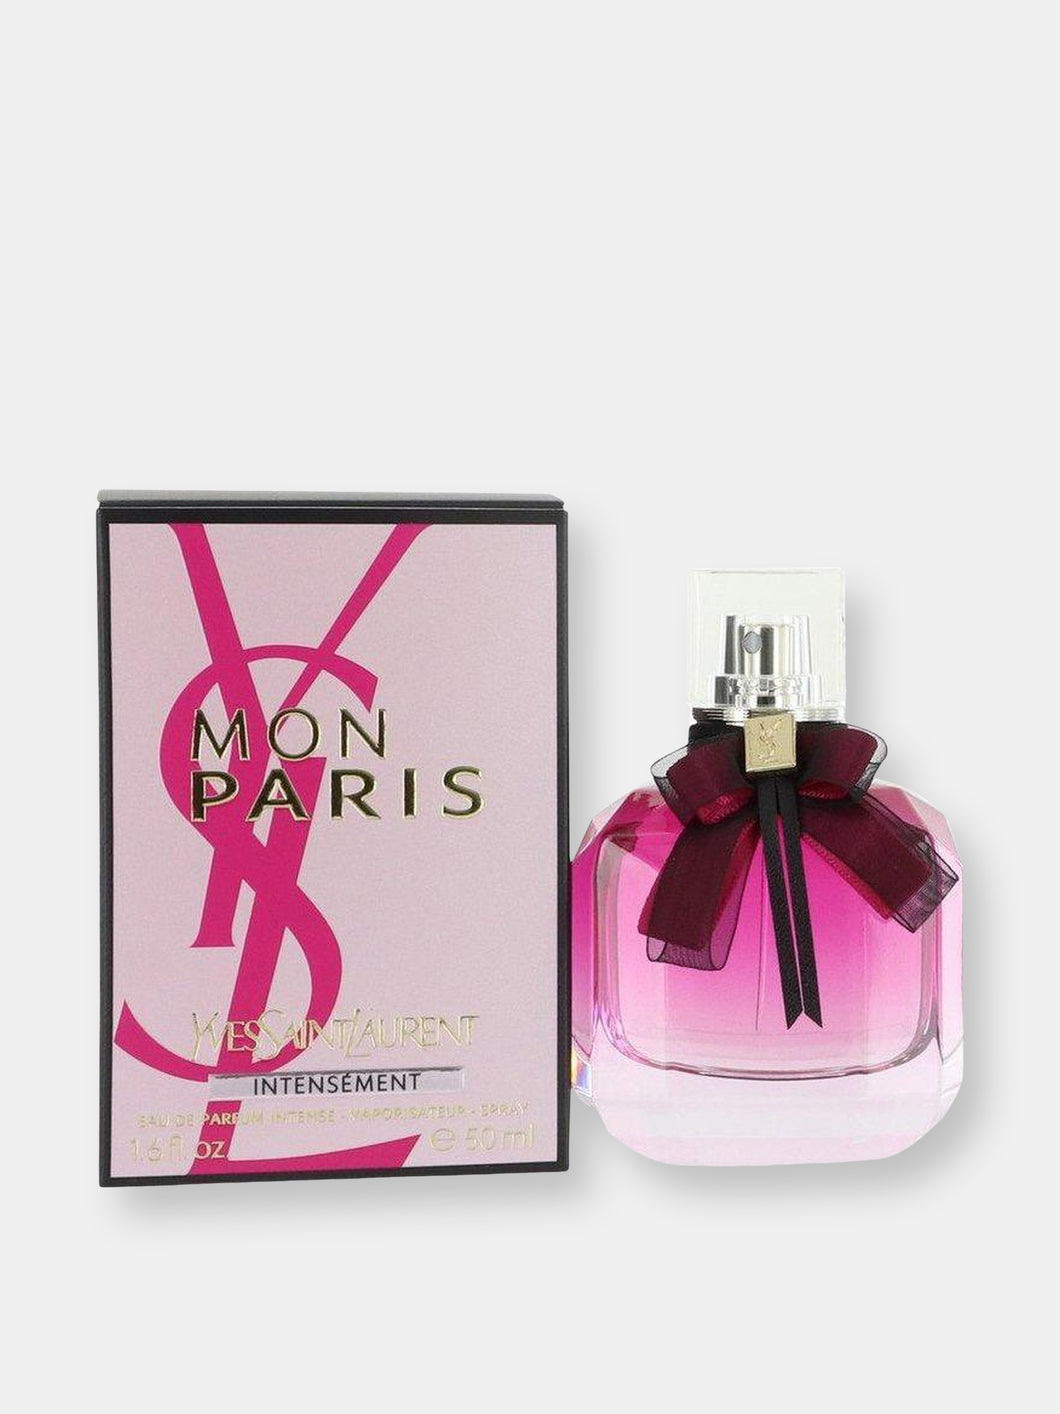 Mon Paris Intensement by Yves Saint Laurent Eau De Parfum Spray 1.7 oz